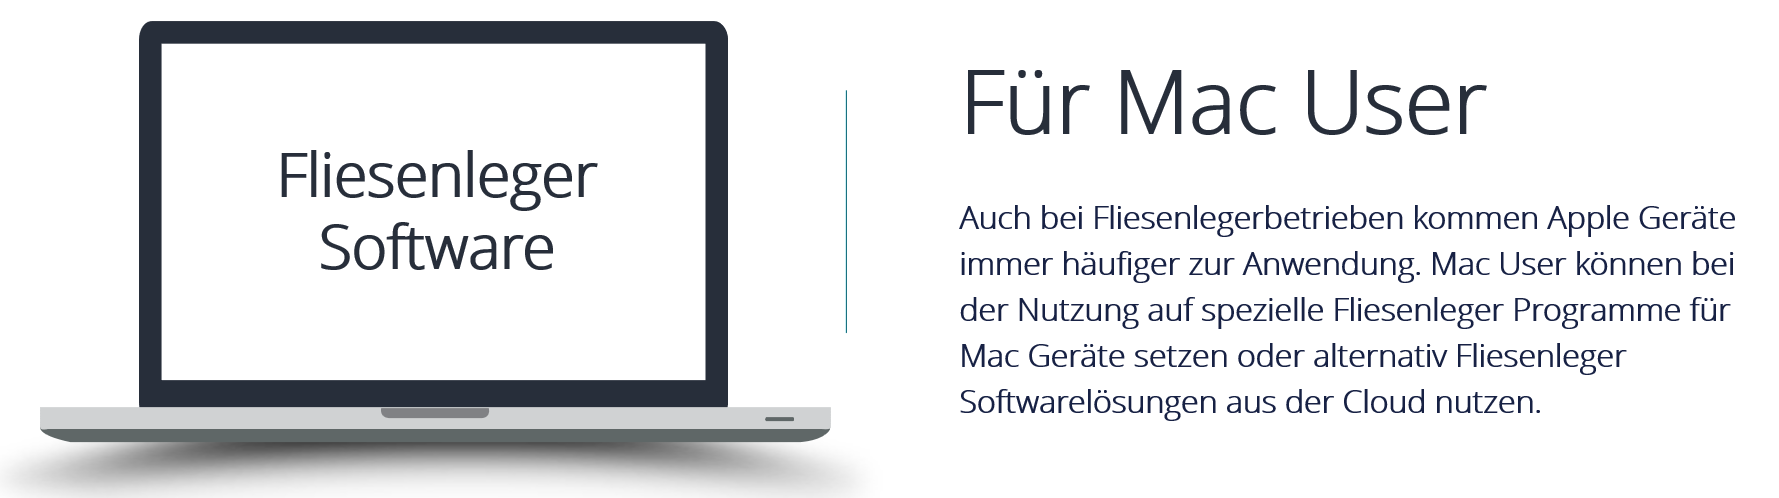 Beitragsbild Fliesenleger Software für Mac Nutzer